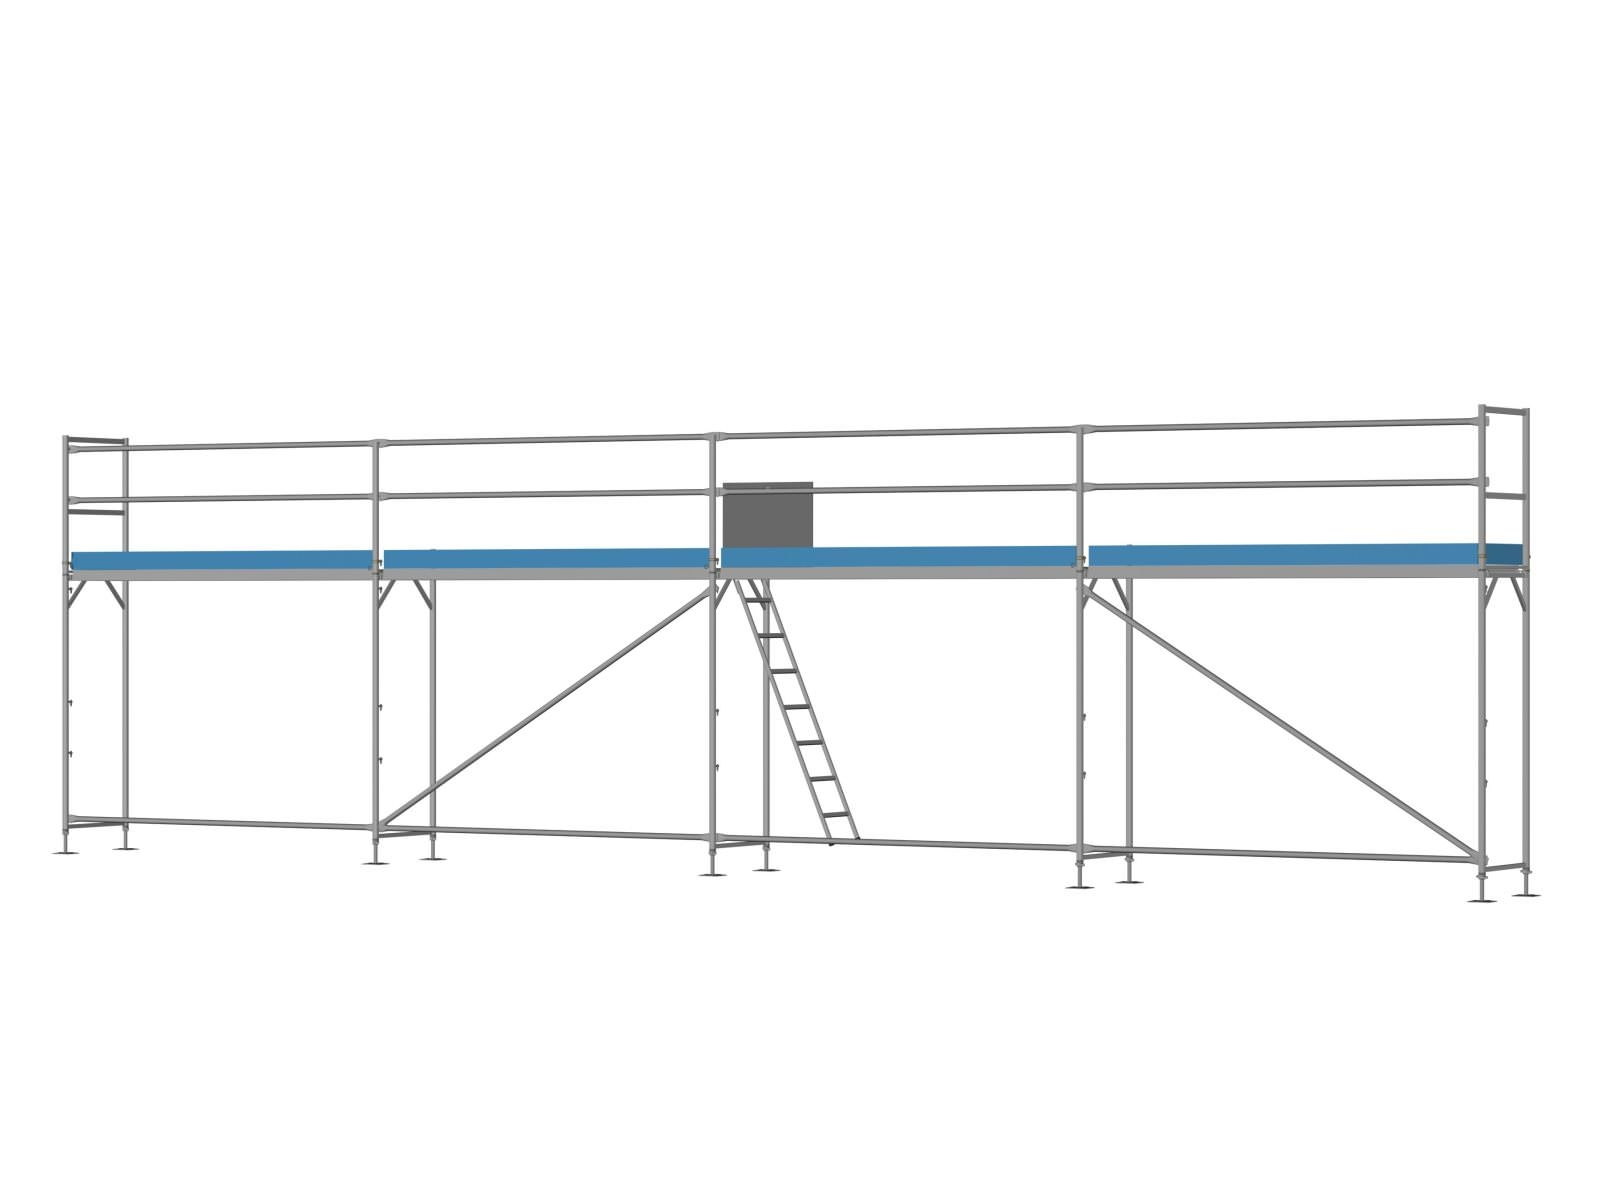 Alu Traufseitengerüst 48 qm - 3,0 m Felder - 12 m lang - 4 m Arbeitshöhe - Komplettpaket